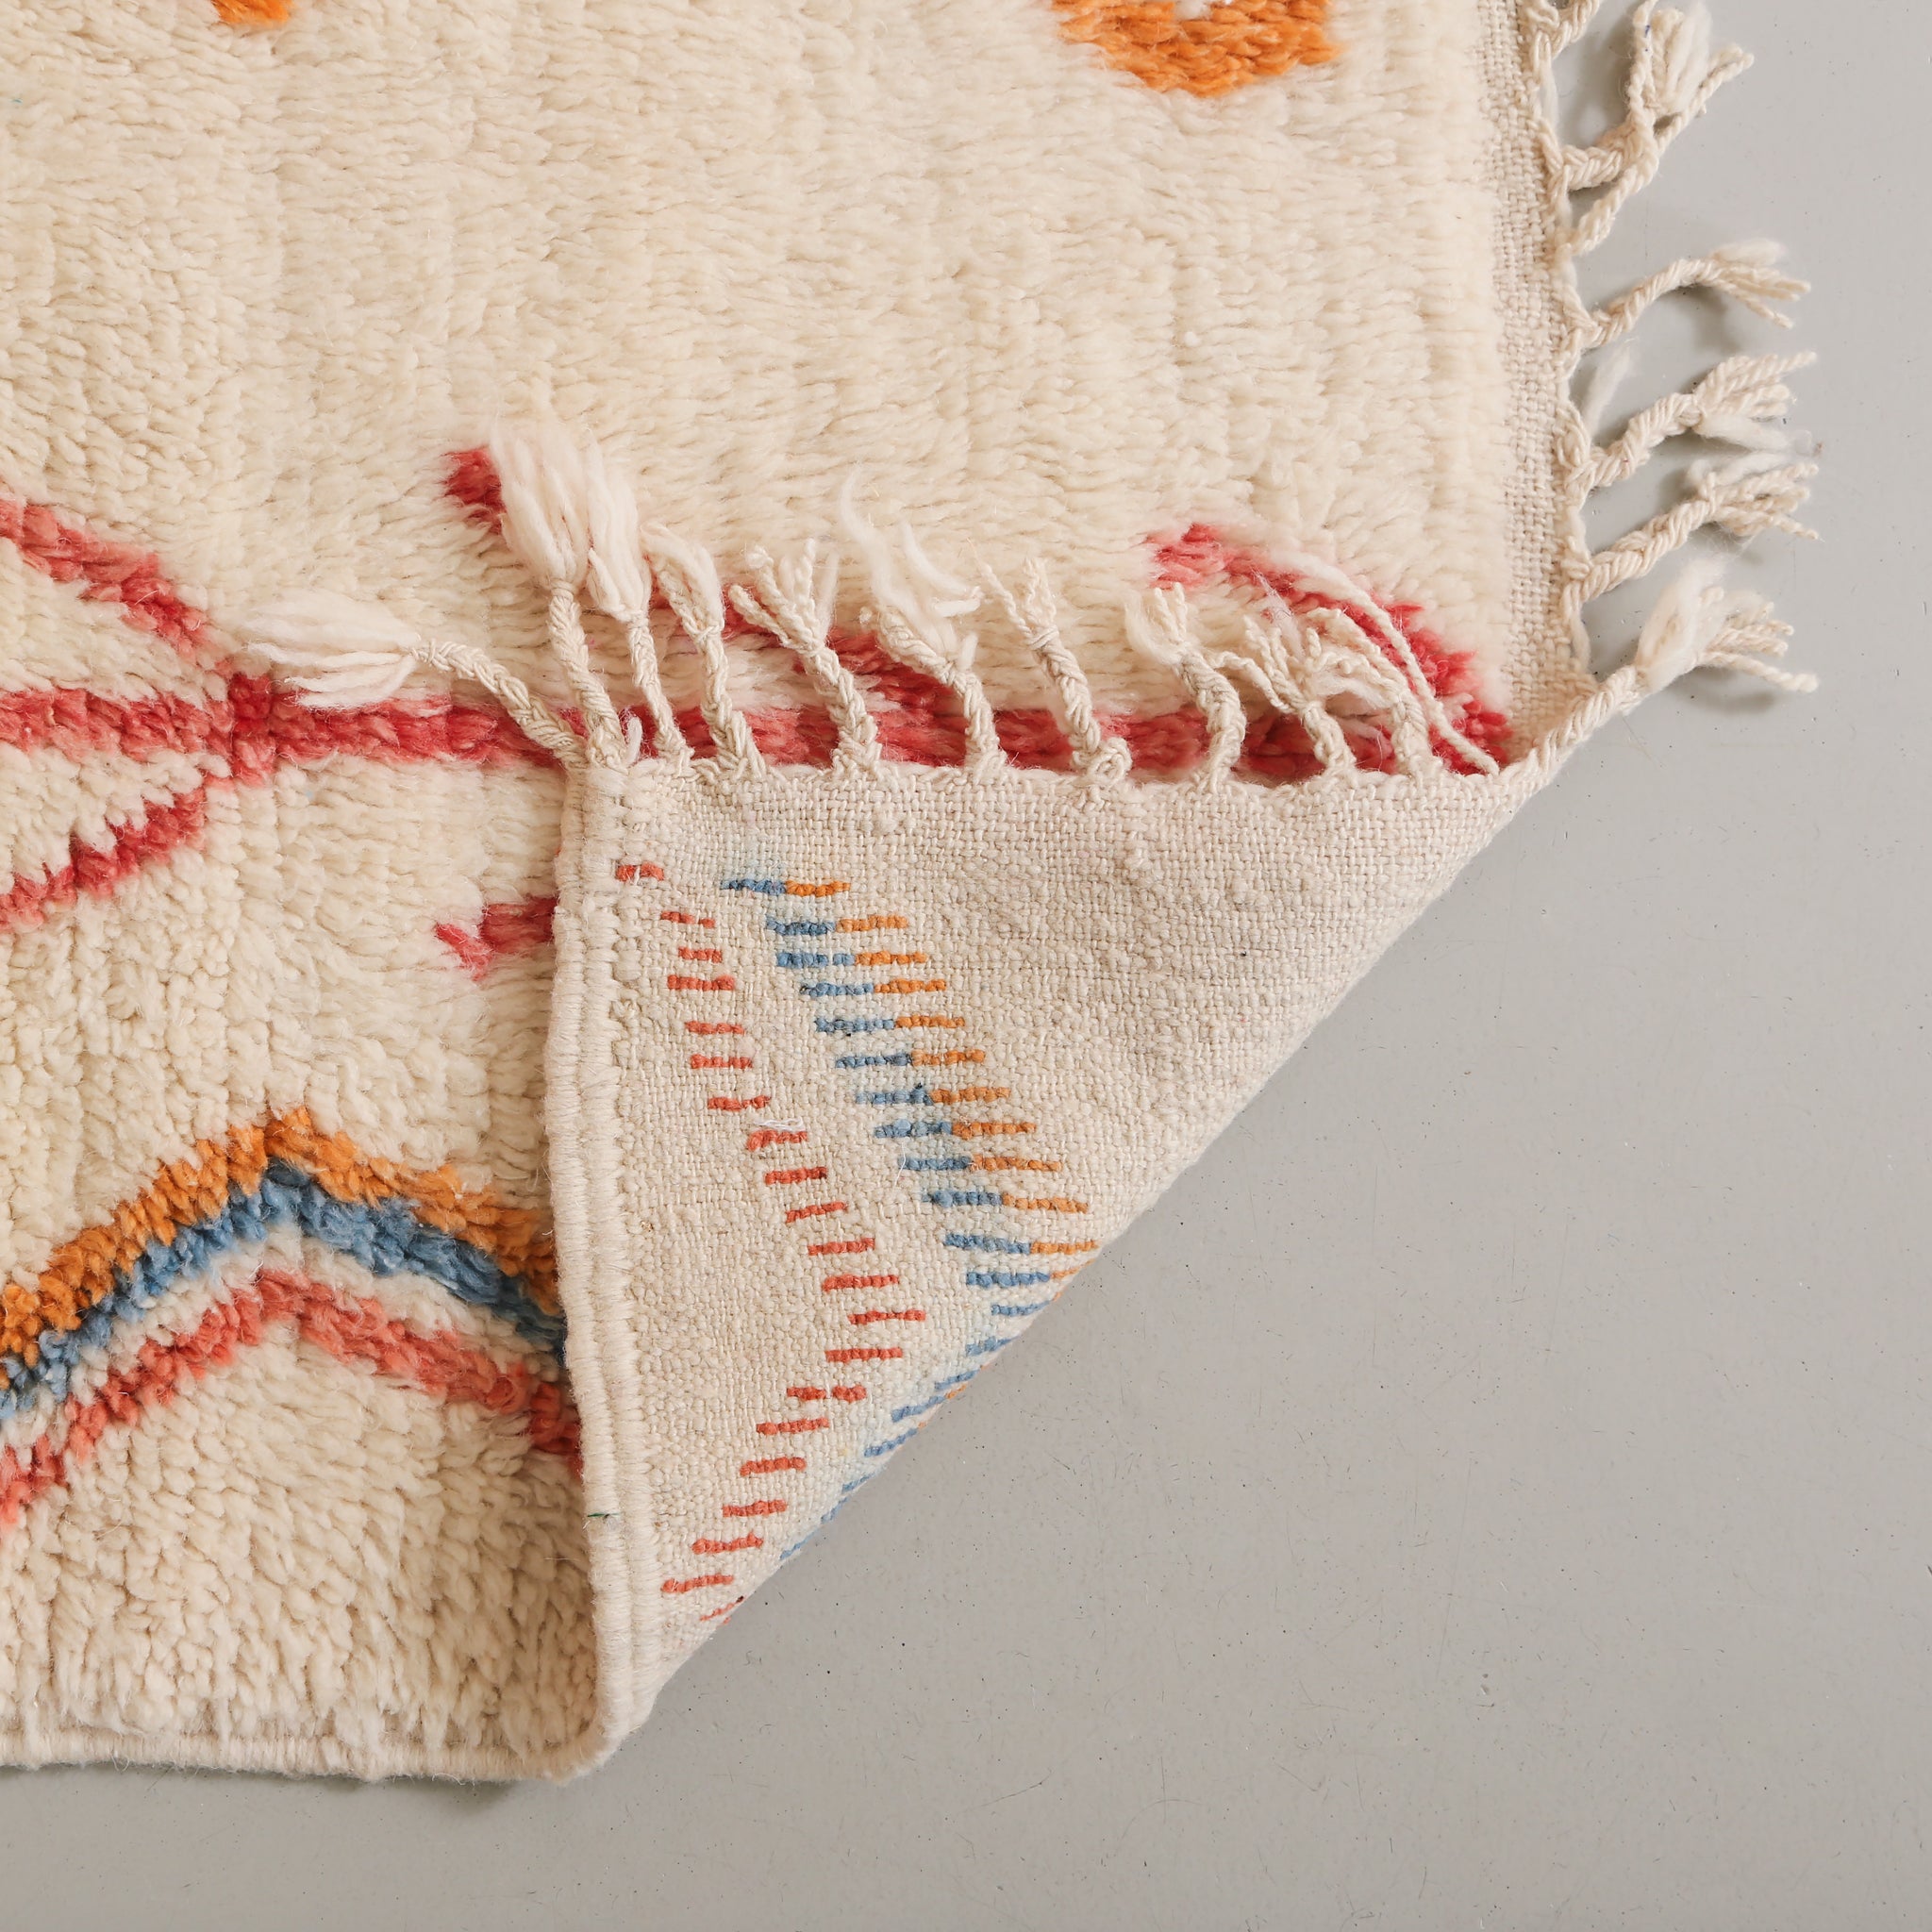 dettaglio del retro del tappeto per osservare la precisione dei nodi di lana